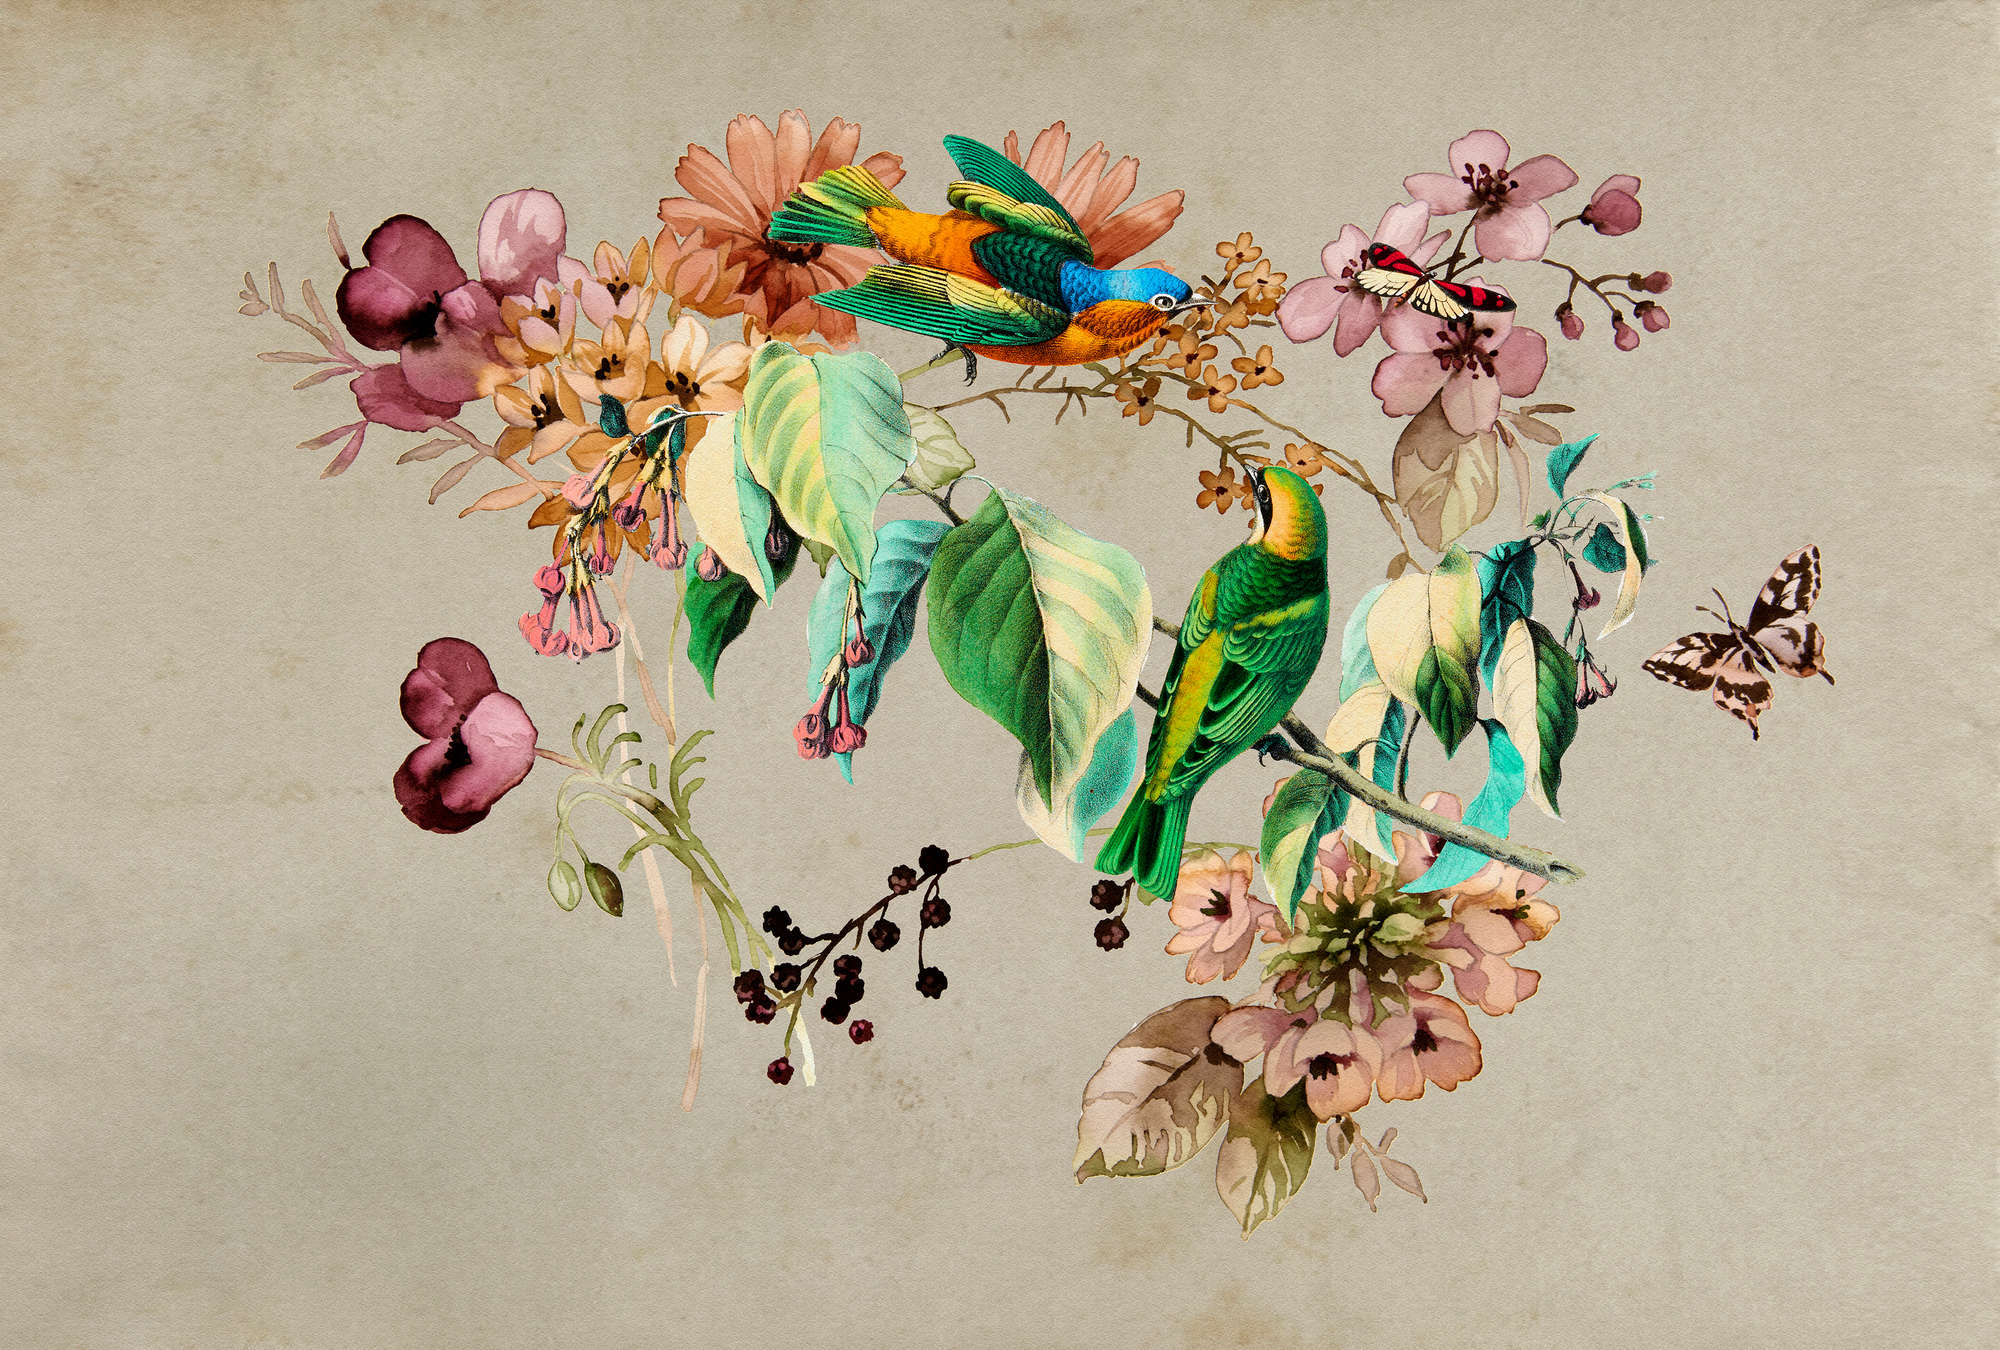             Nido de amor 1 - Mural de pared con flores de acuarela y pájaros de colores
        